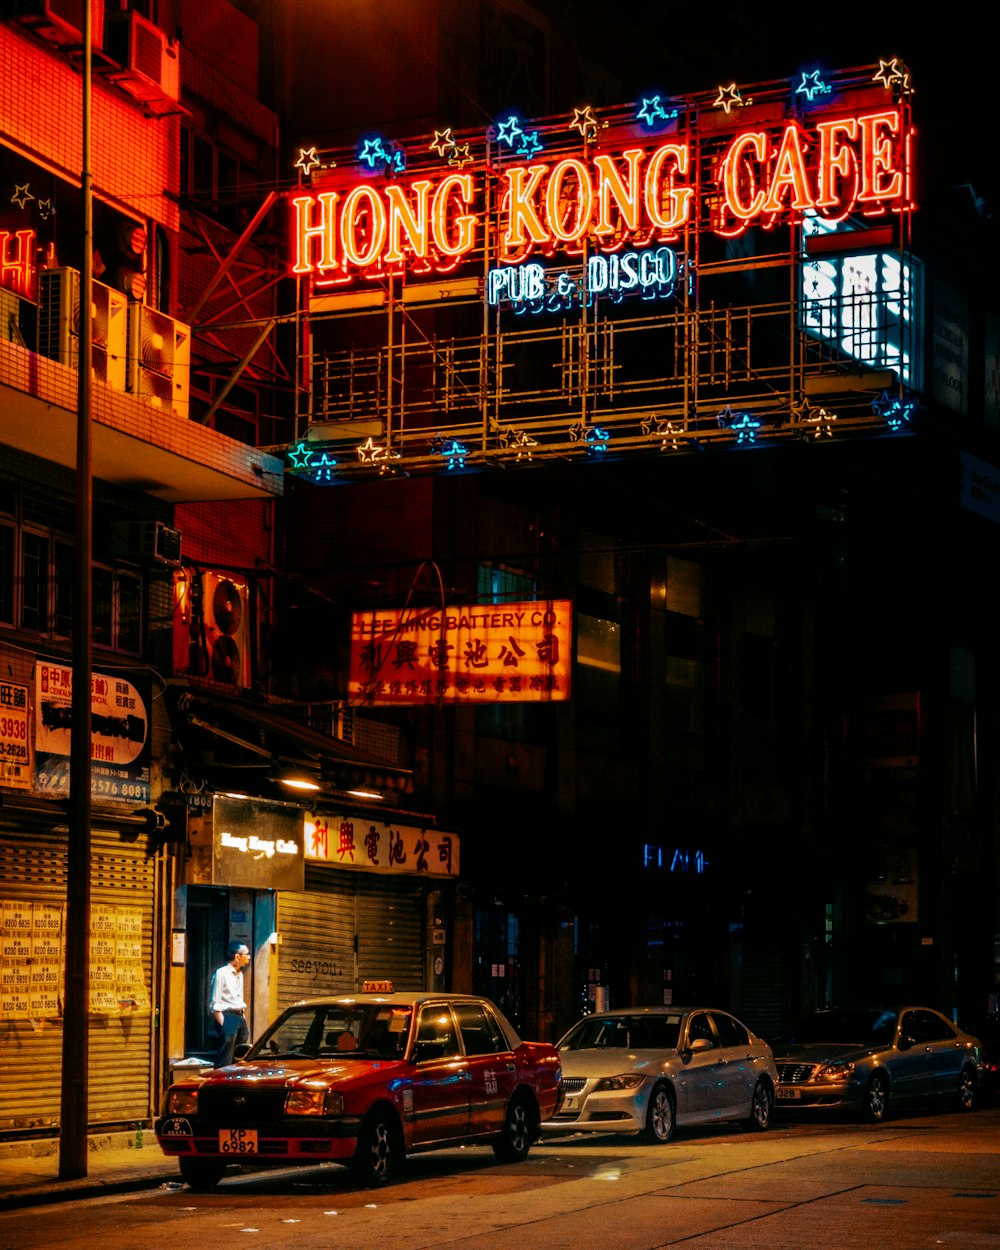 Hong Kong Cafe neon signage